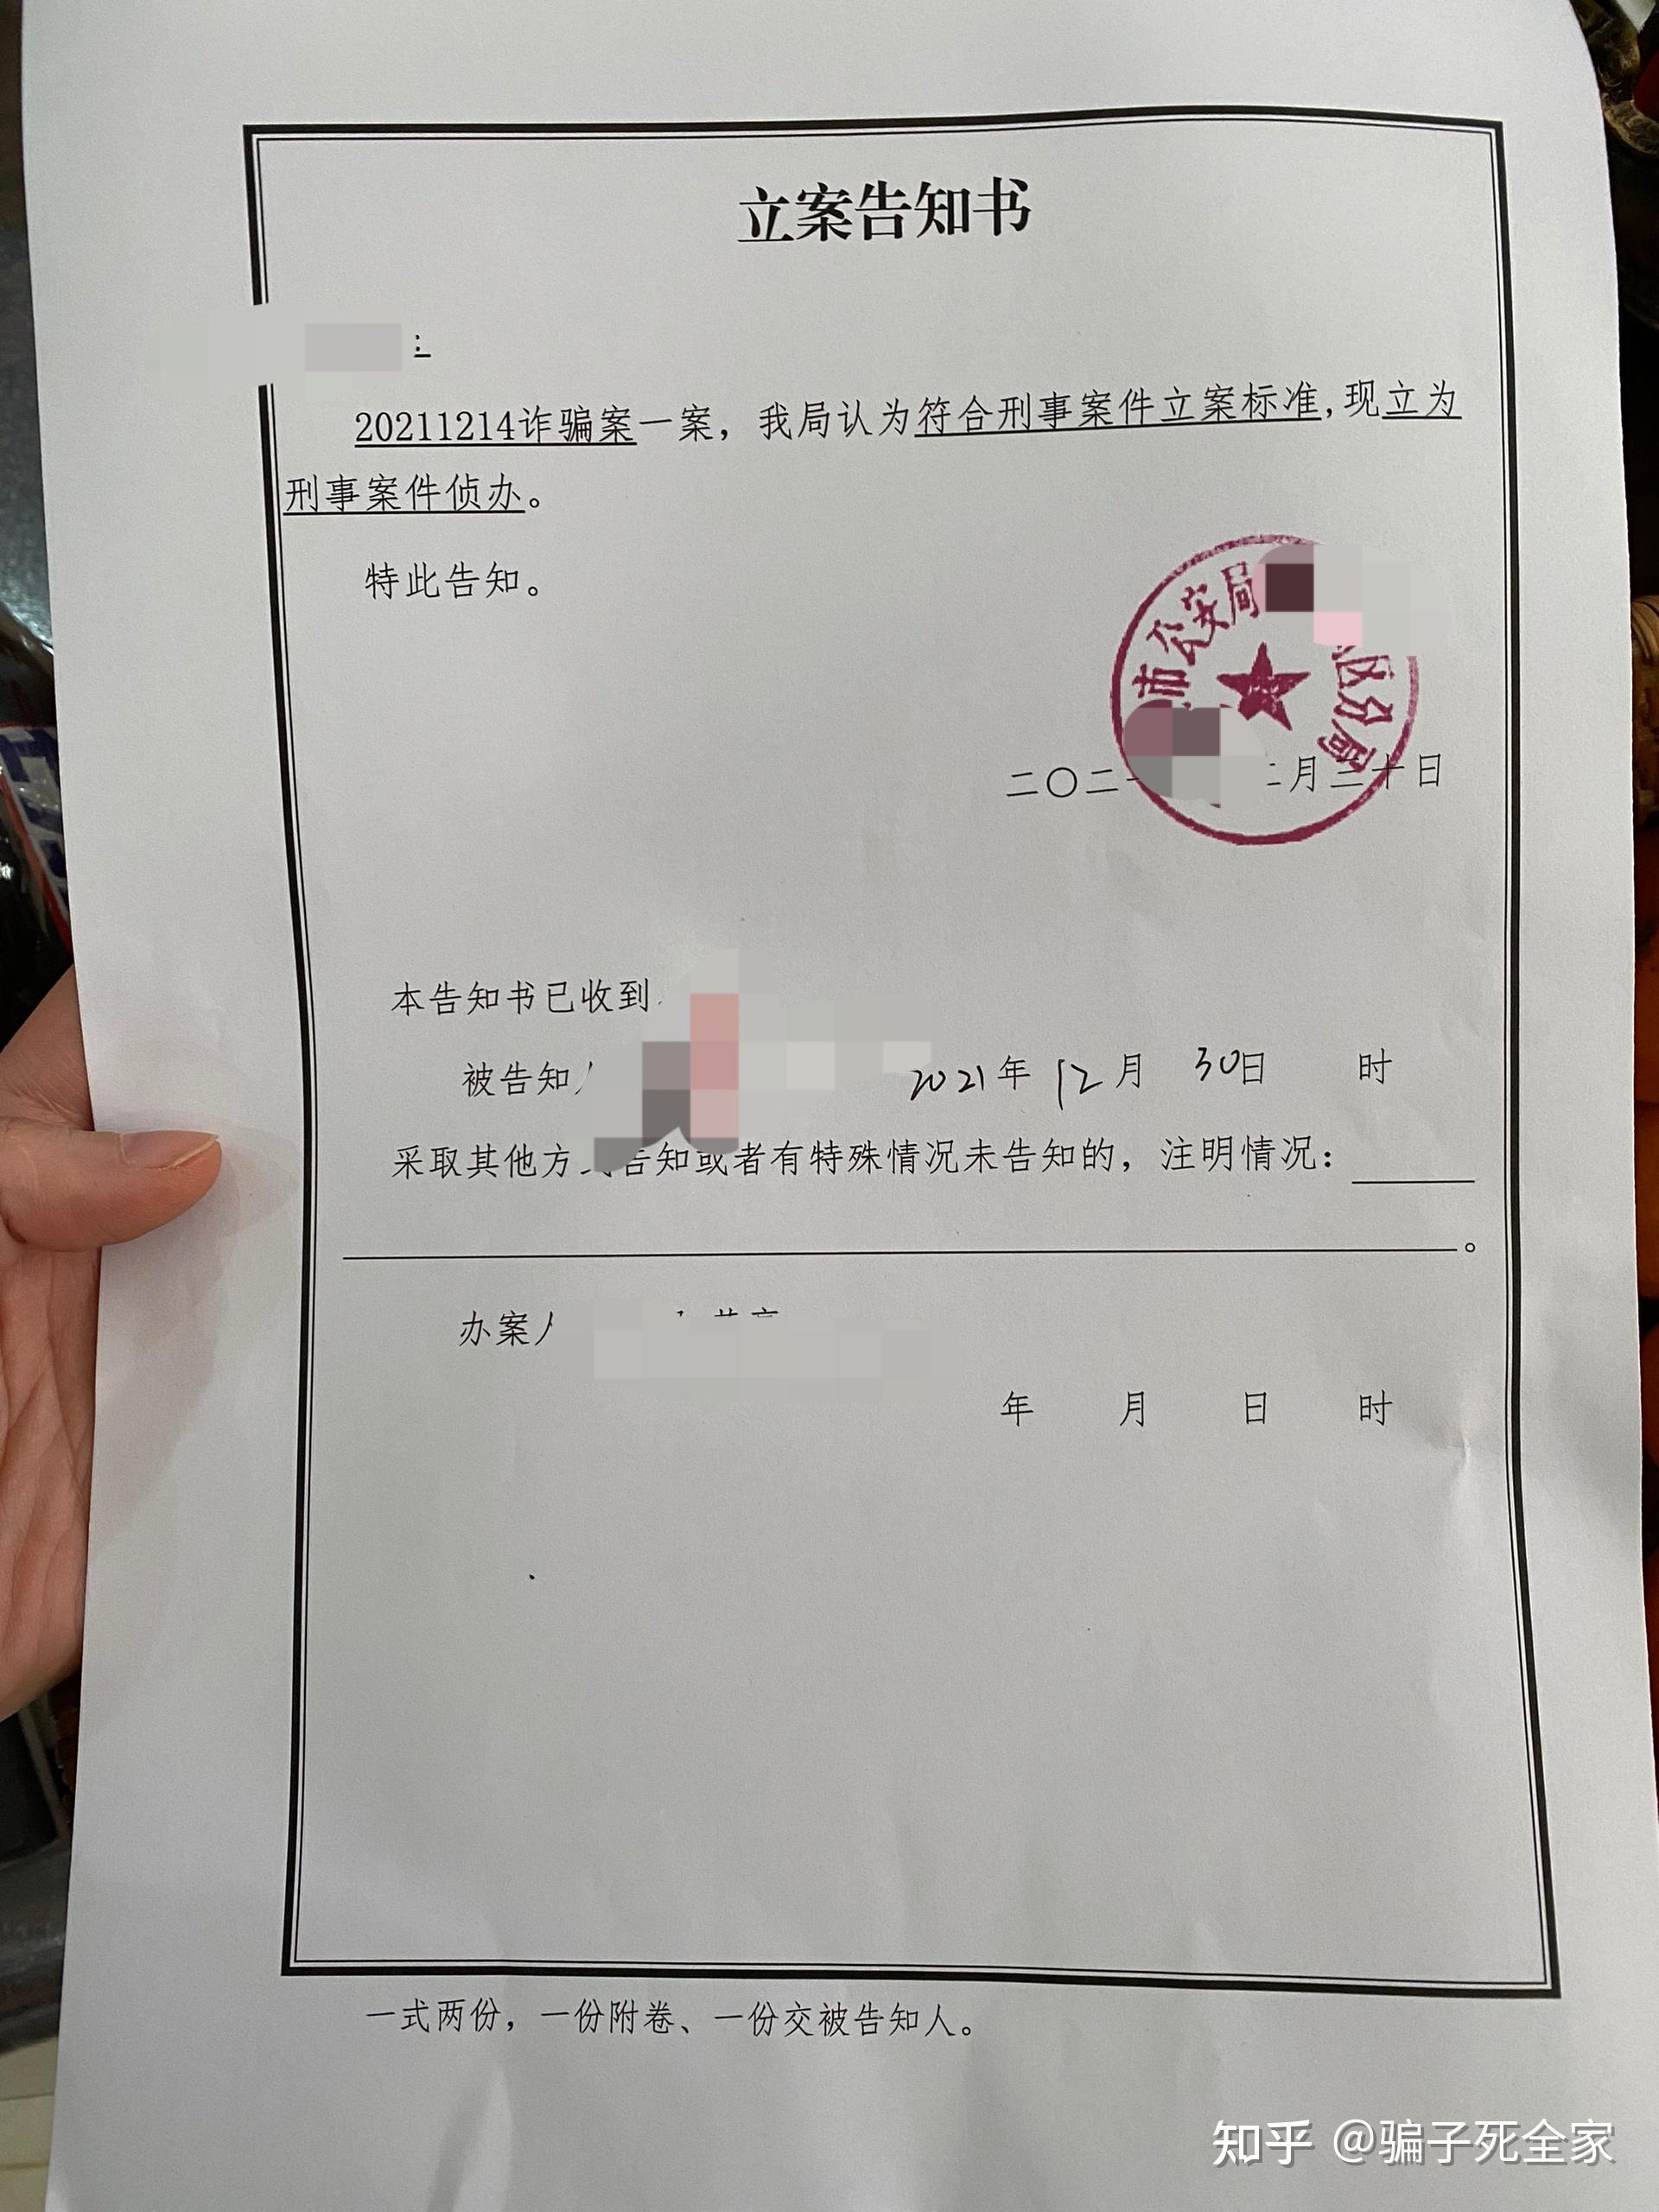 13岁女孩陈尸水塘手机存暴力视频 警方：初步调查是网络视频_凤凰网